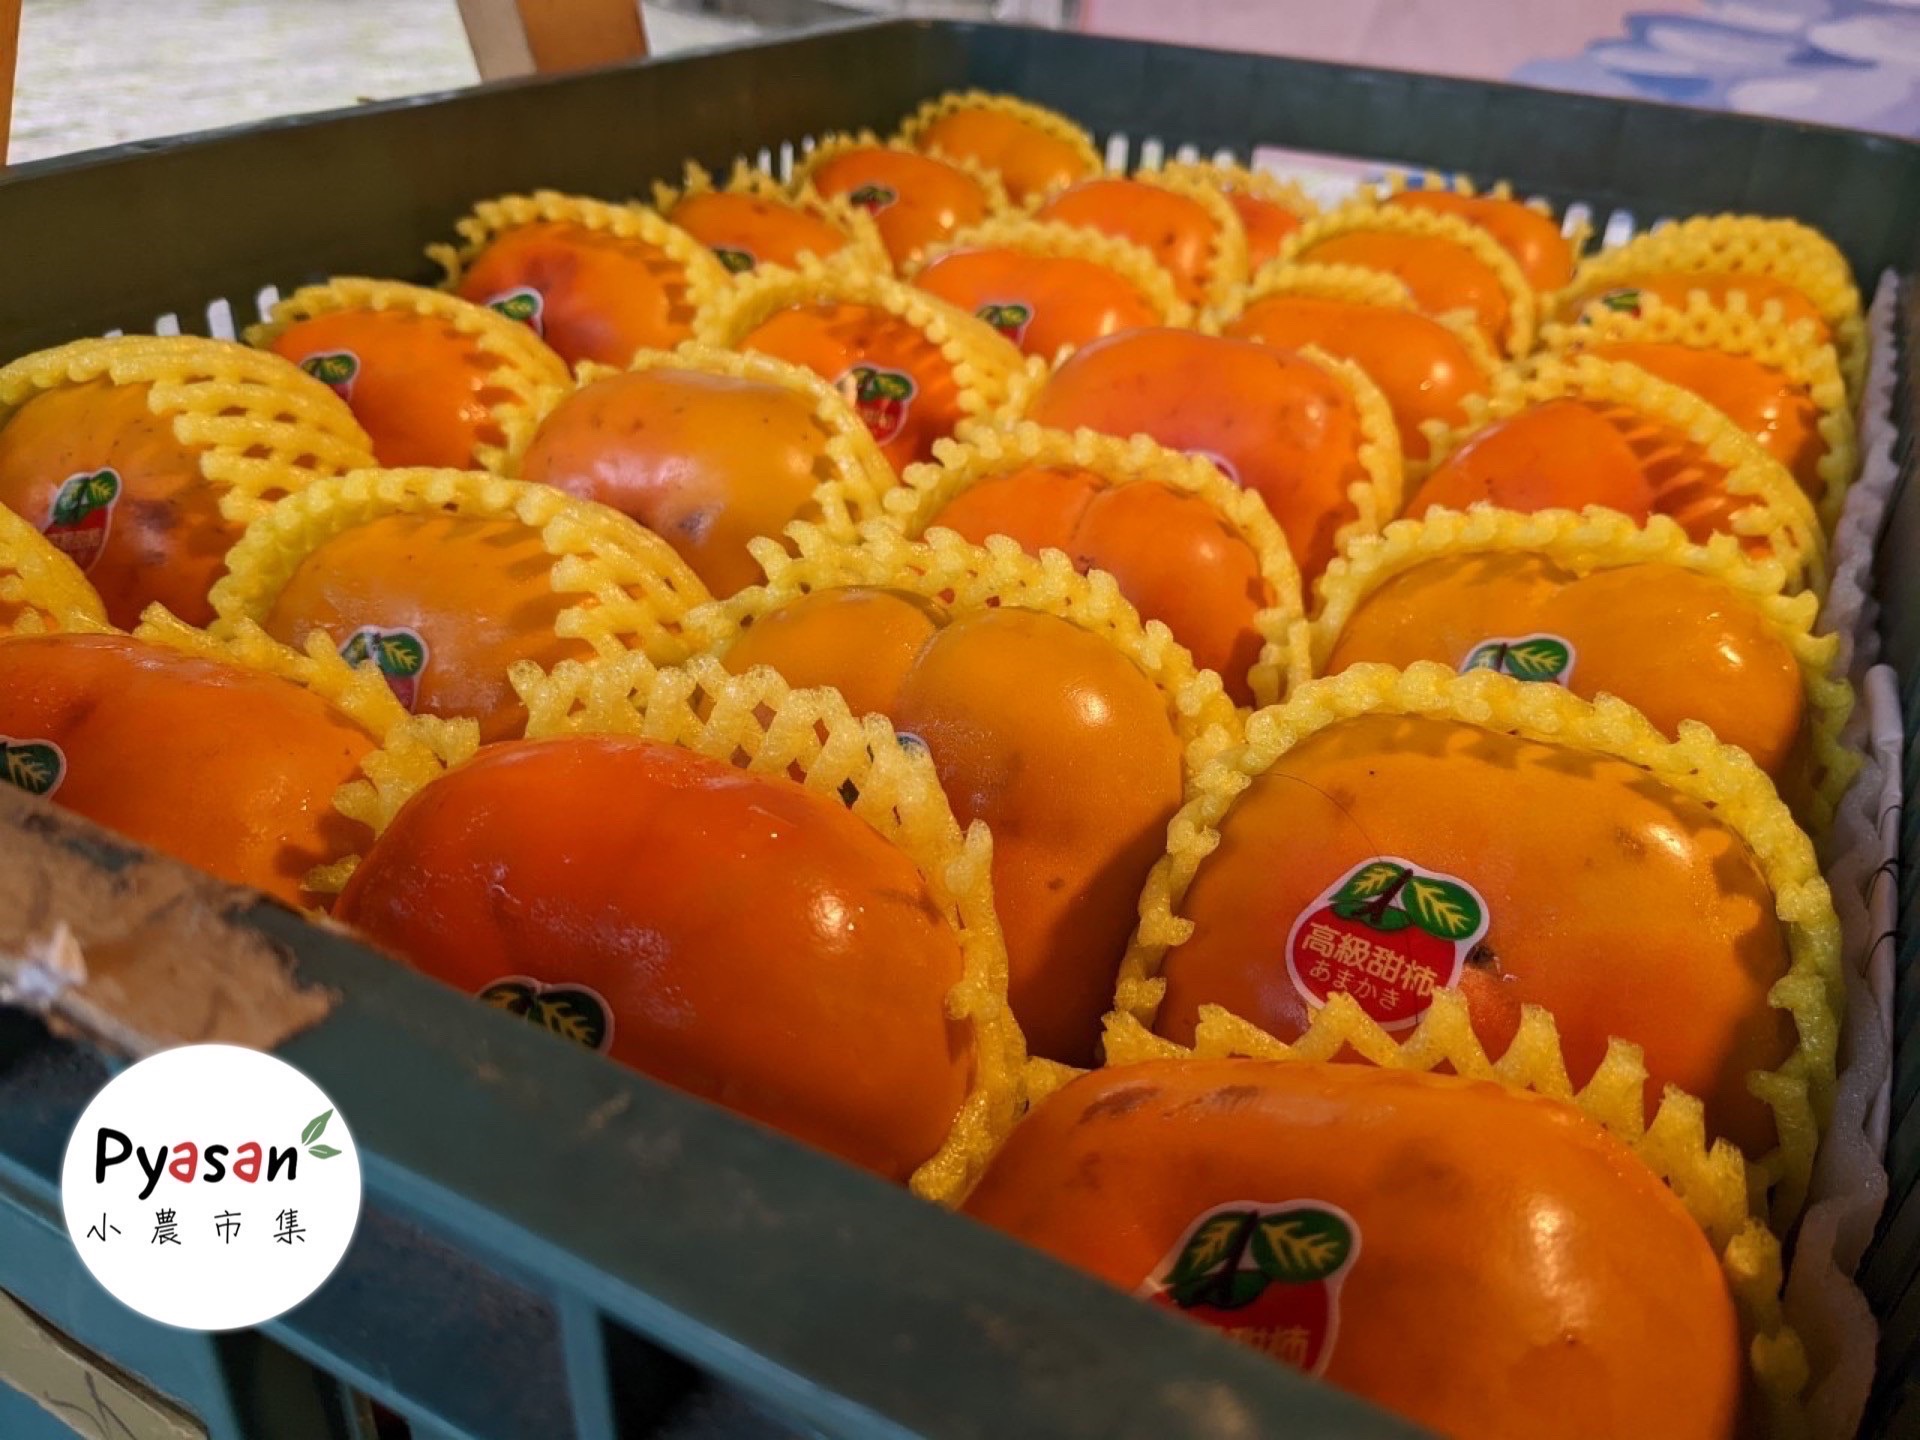 桃園復興Pyasan市集 拉拉山甜柿品質掛保證